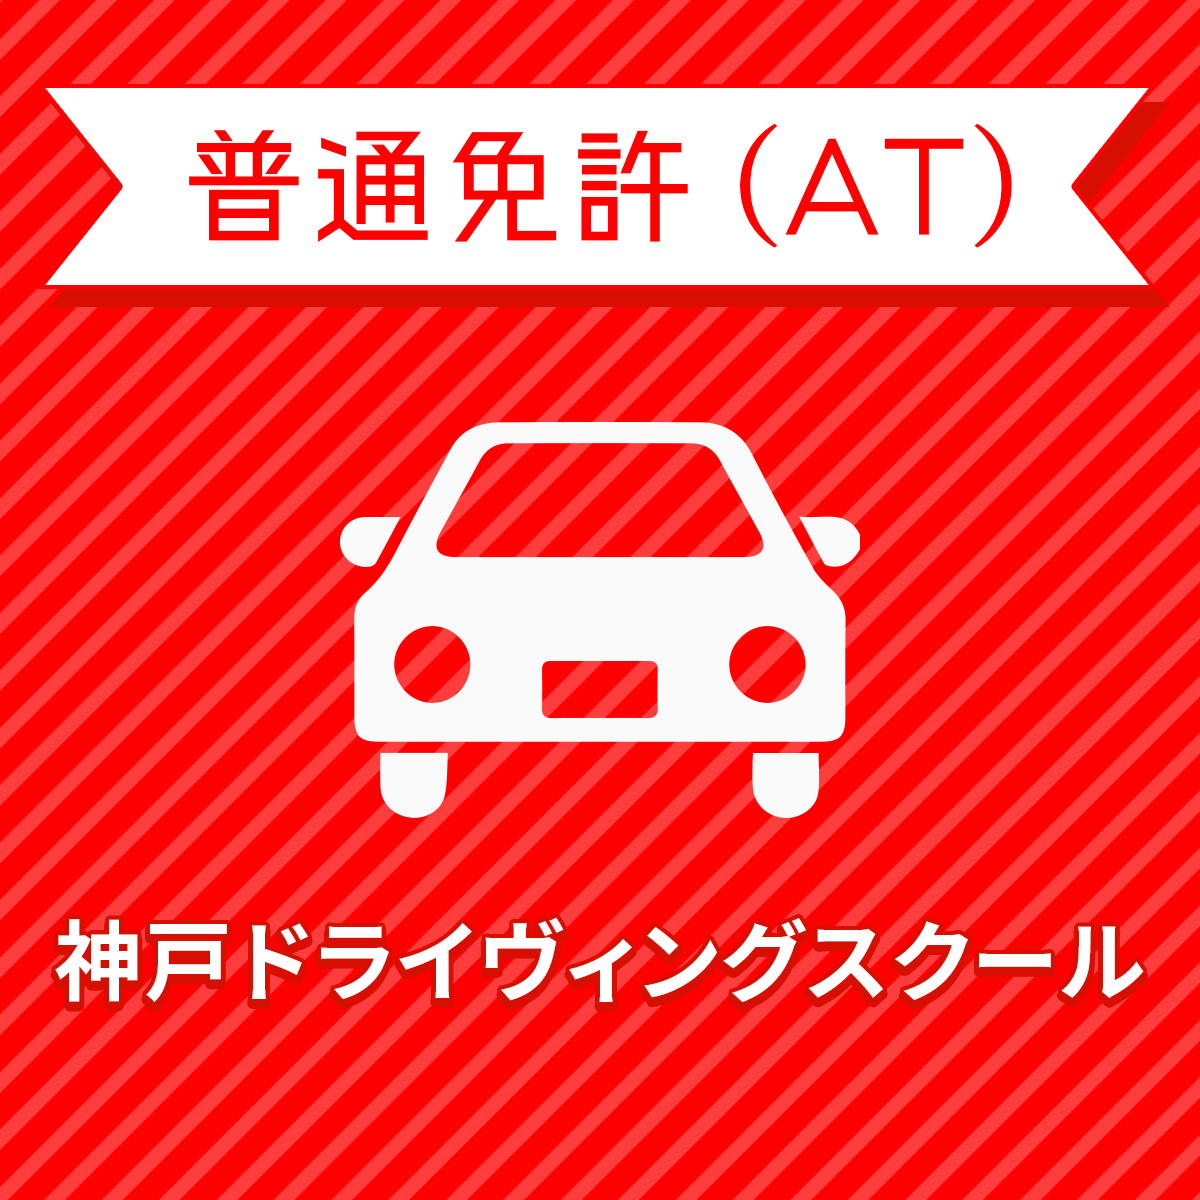 兵庫県神戸市 普通車ATコース 一般料金 免許なし 原付免許所持対象 ついに入荷 激安